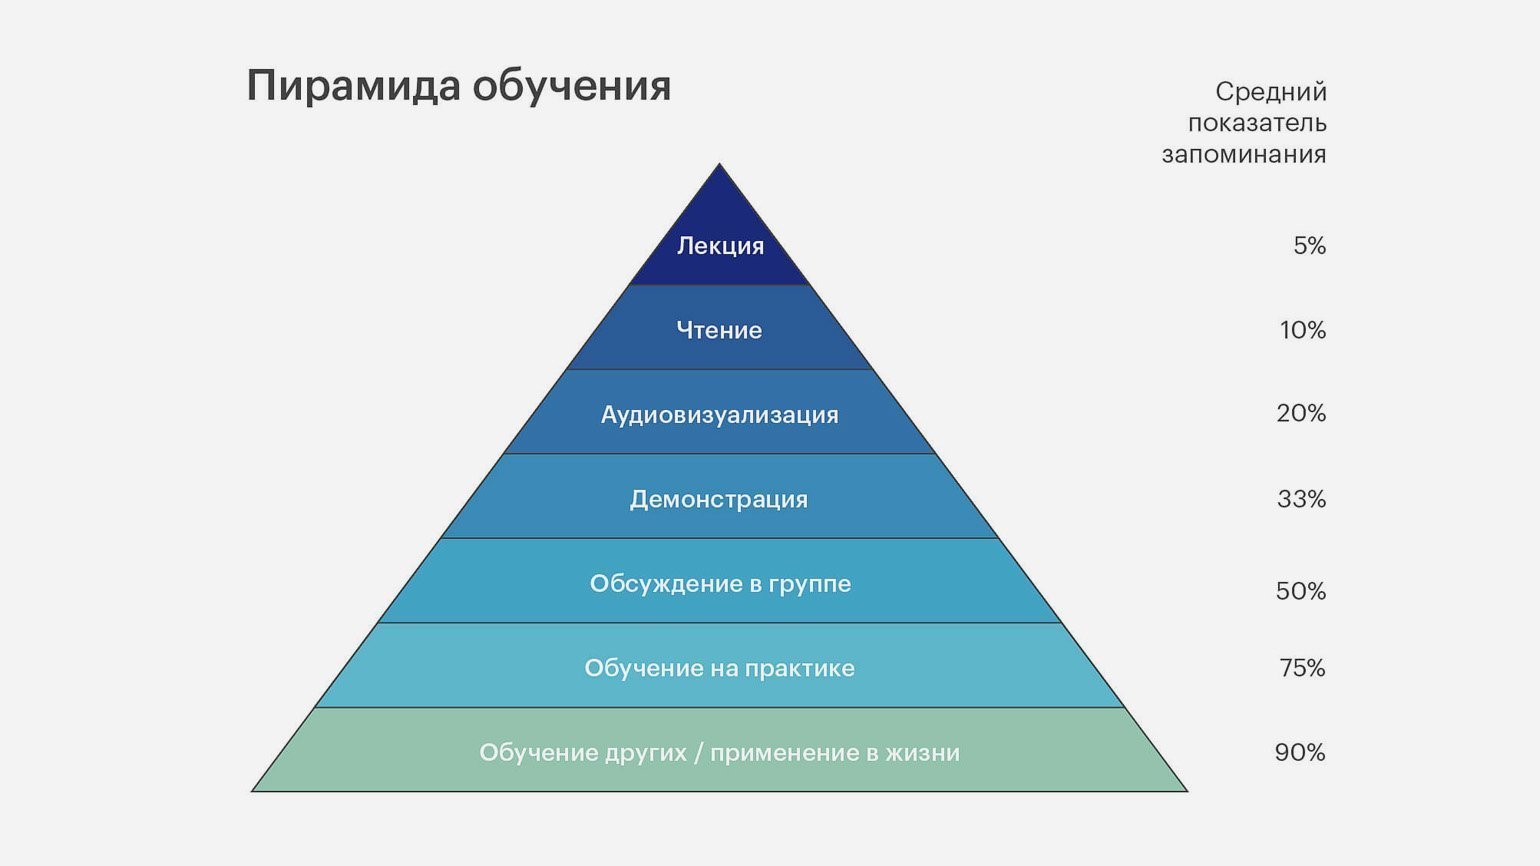 Пирамида обучения, или пирамида Дейла. Источник